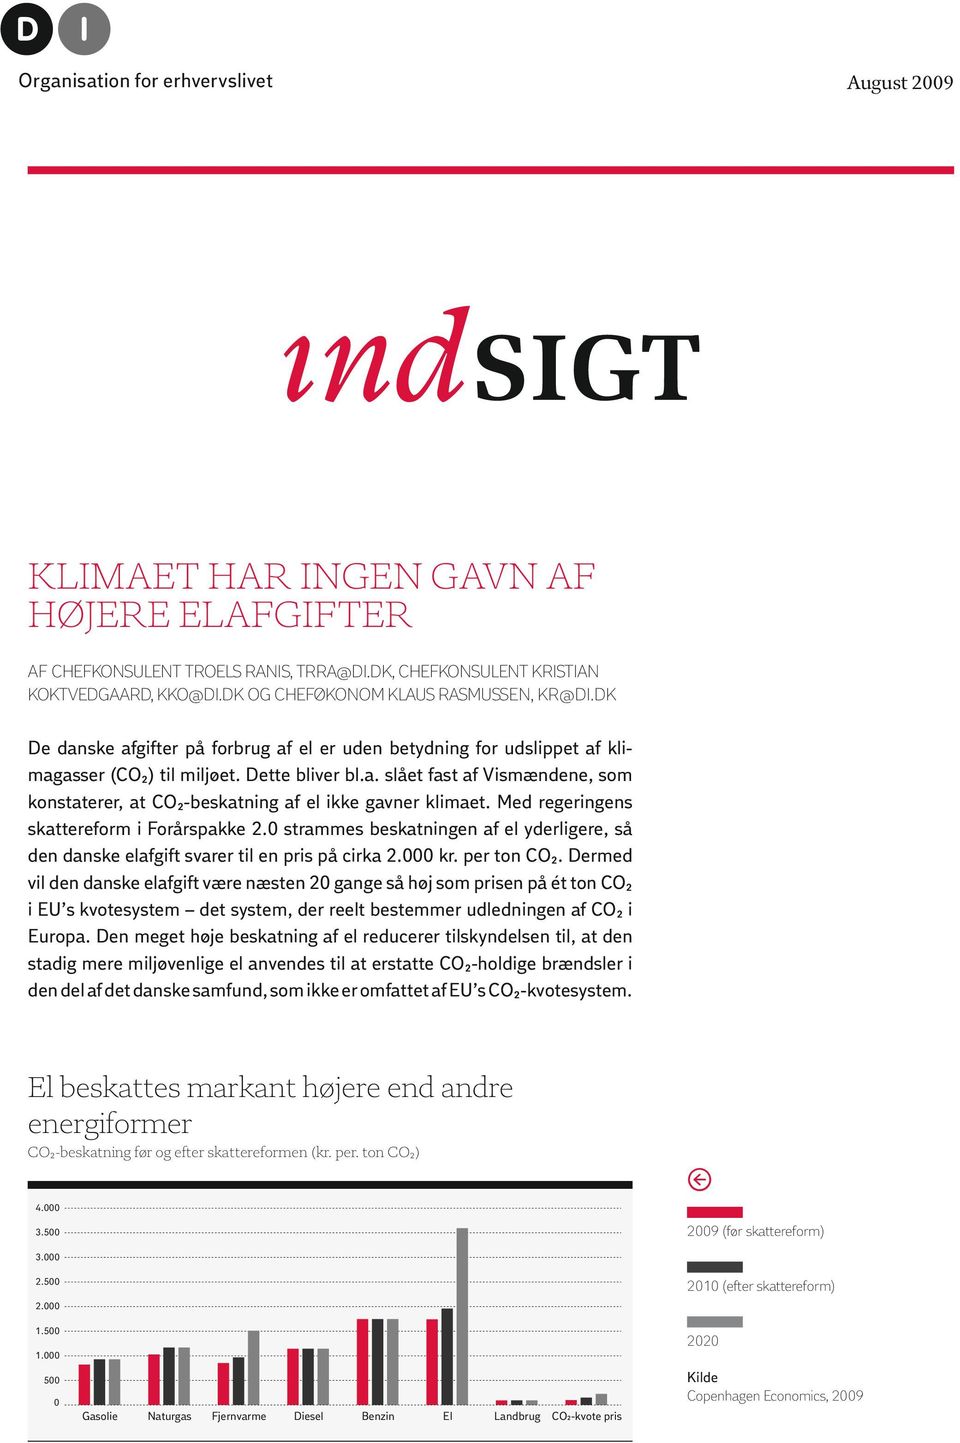 Med regeringens skattereform i Forårspakke 2. strammes beskatningen af el yderligere, så den danske elafgift svarer til en pris på cirka 2. kr. per ton CO2.